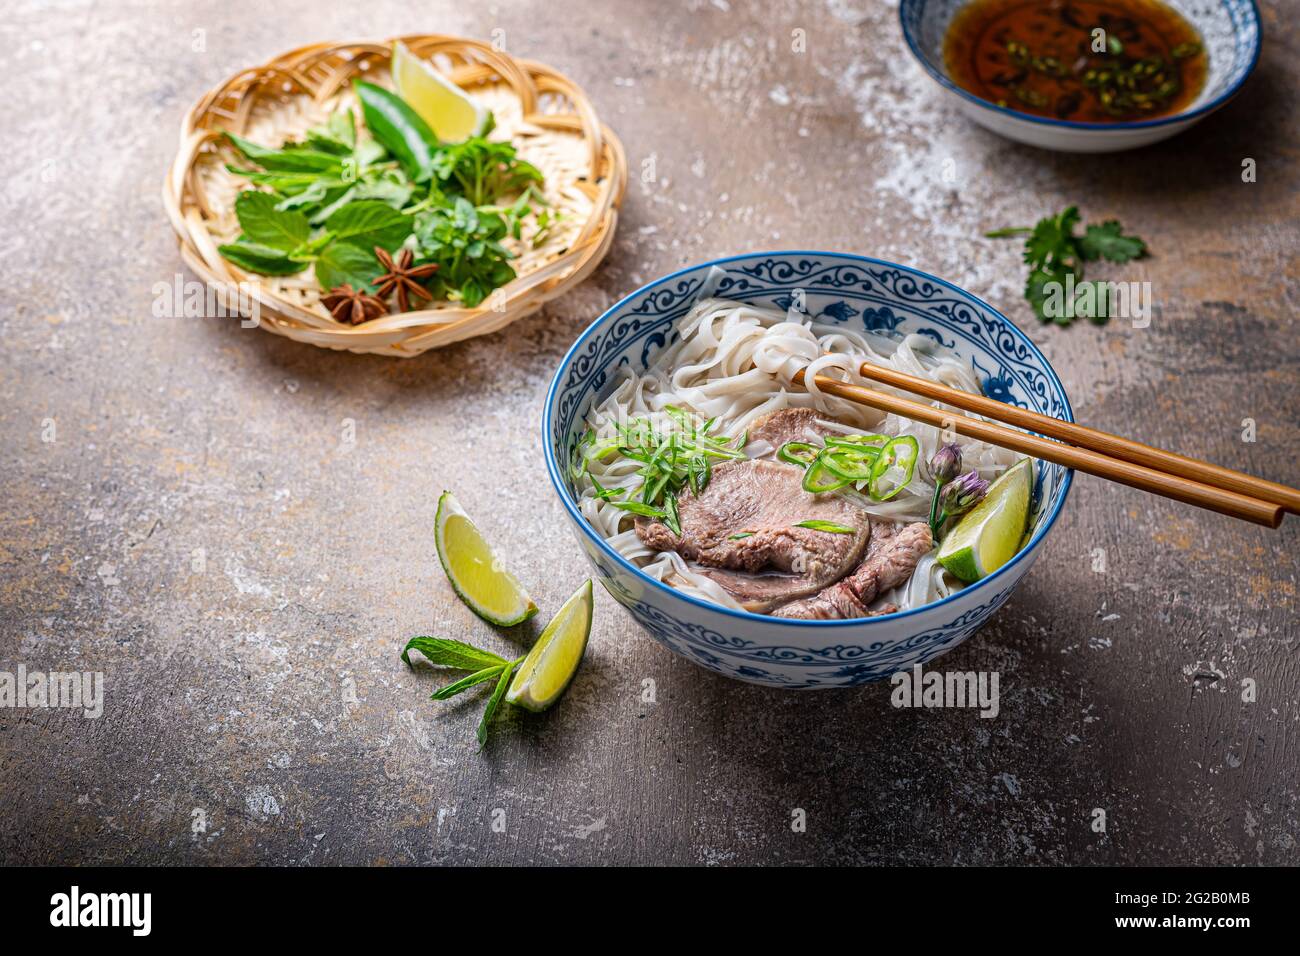 Soupe vietnamienne traditionnelle de nouilles pho dans un bol, garni de basilic, menthe, citron vert, sur fond de béton. Banque D'Images